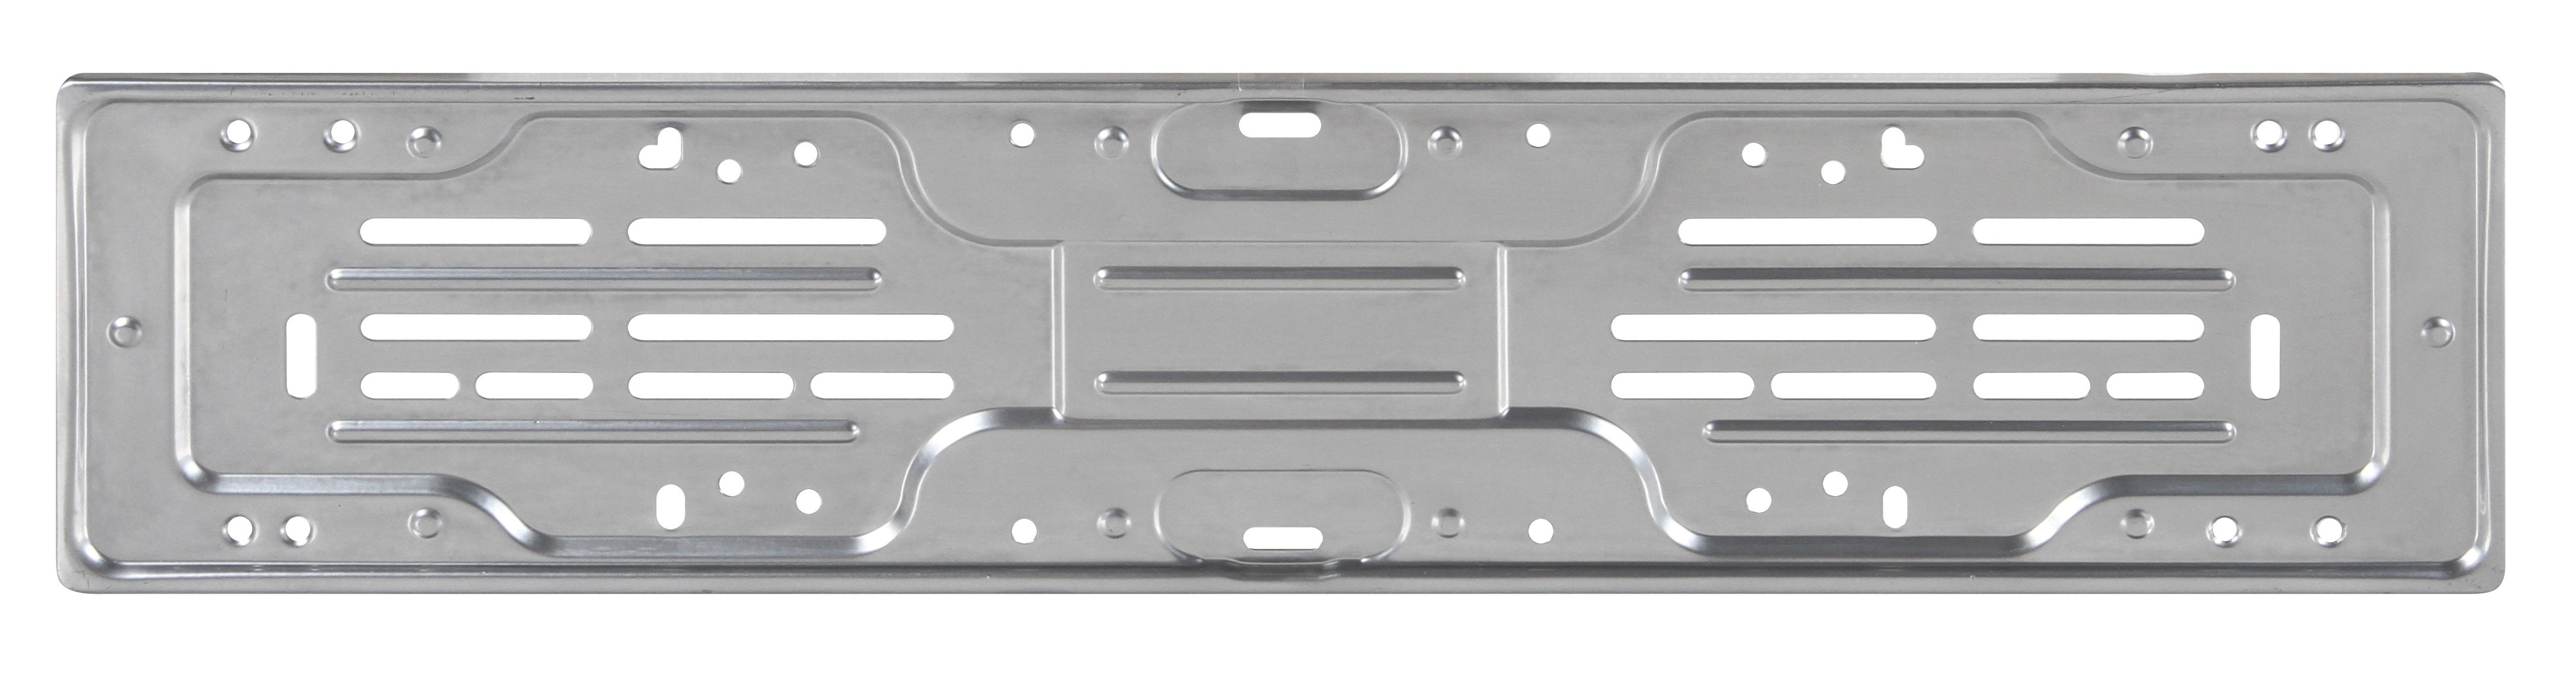 Porta targa posteriore in acciaio verniciato grigio metallizzato